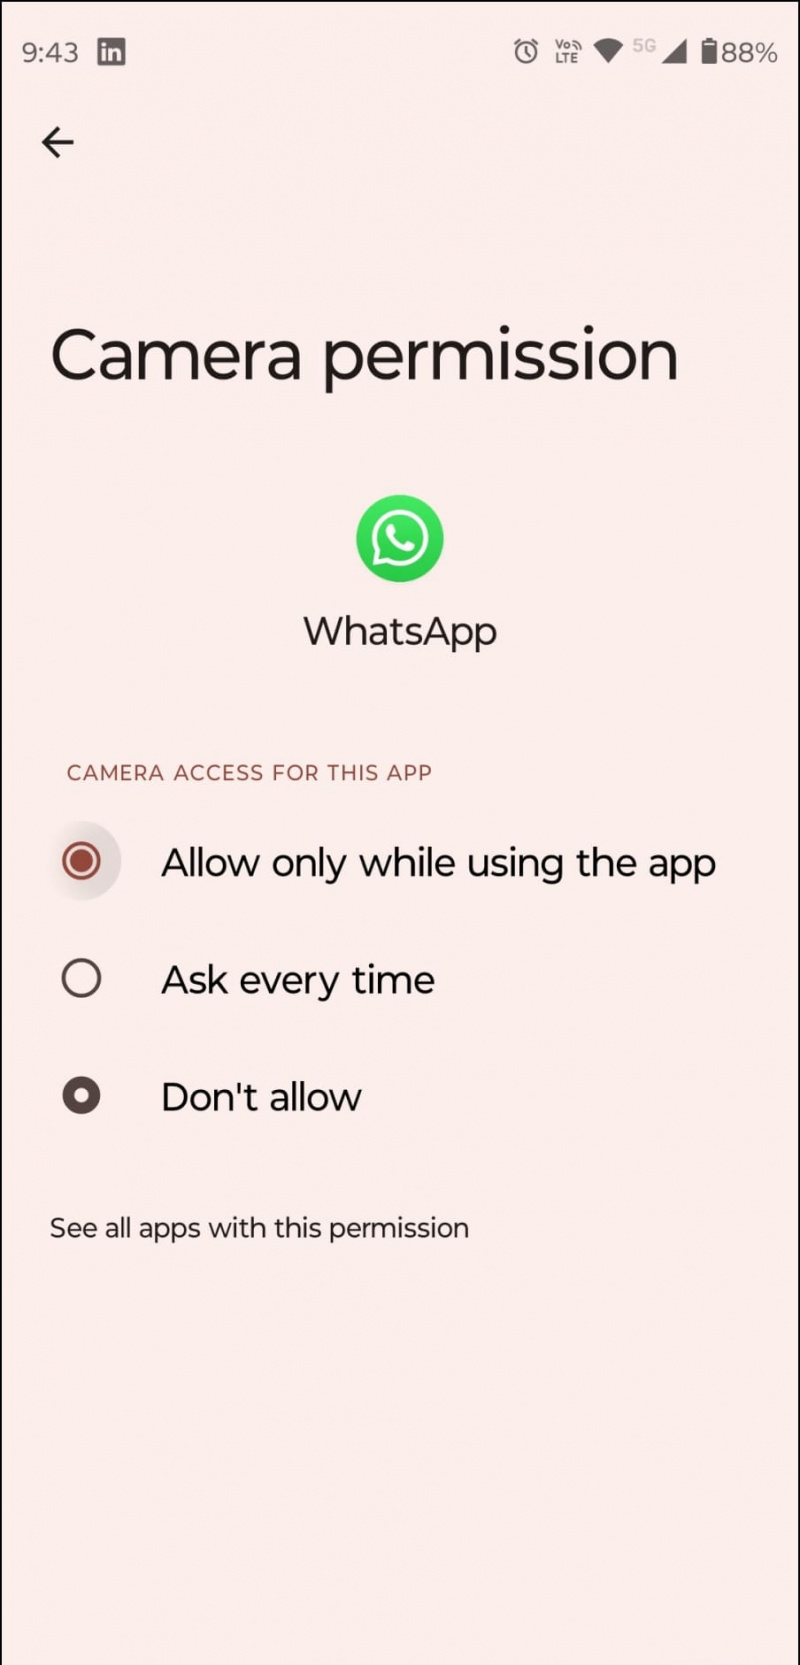   Erlauben Sie den WhatsApp-Kamerazugriff für die Anmeldung mit zwei Geräten